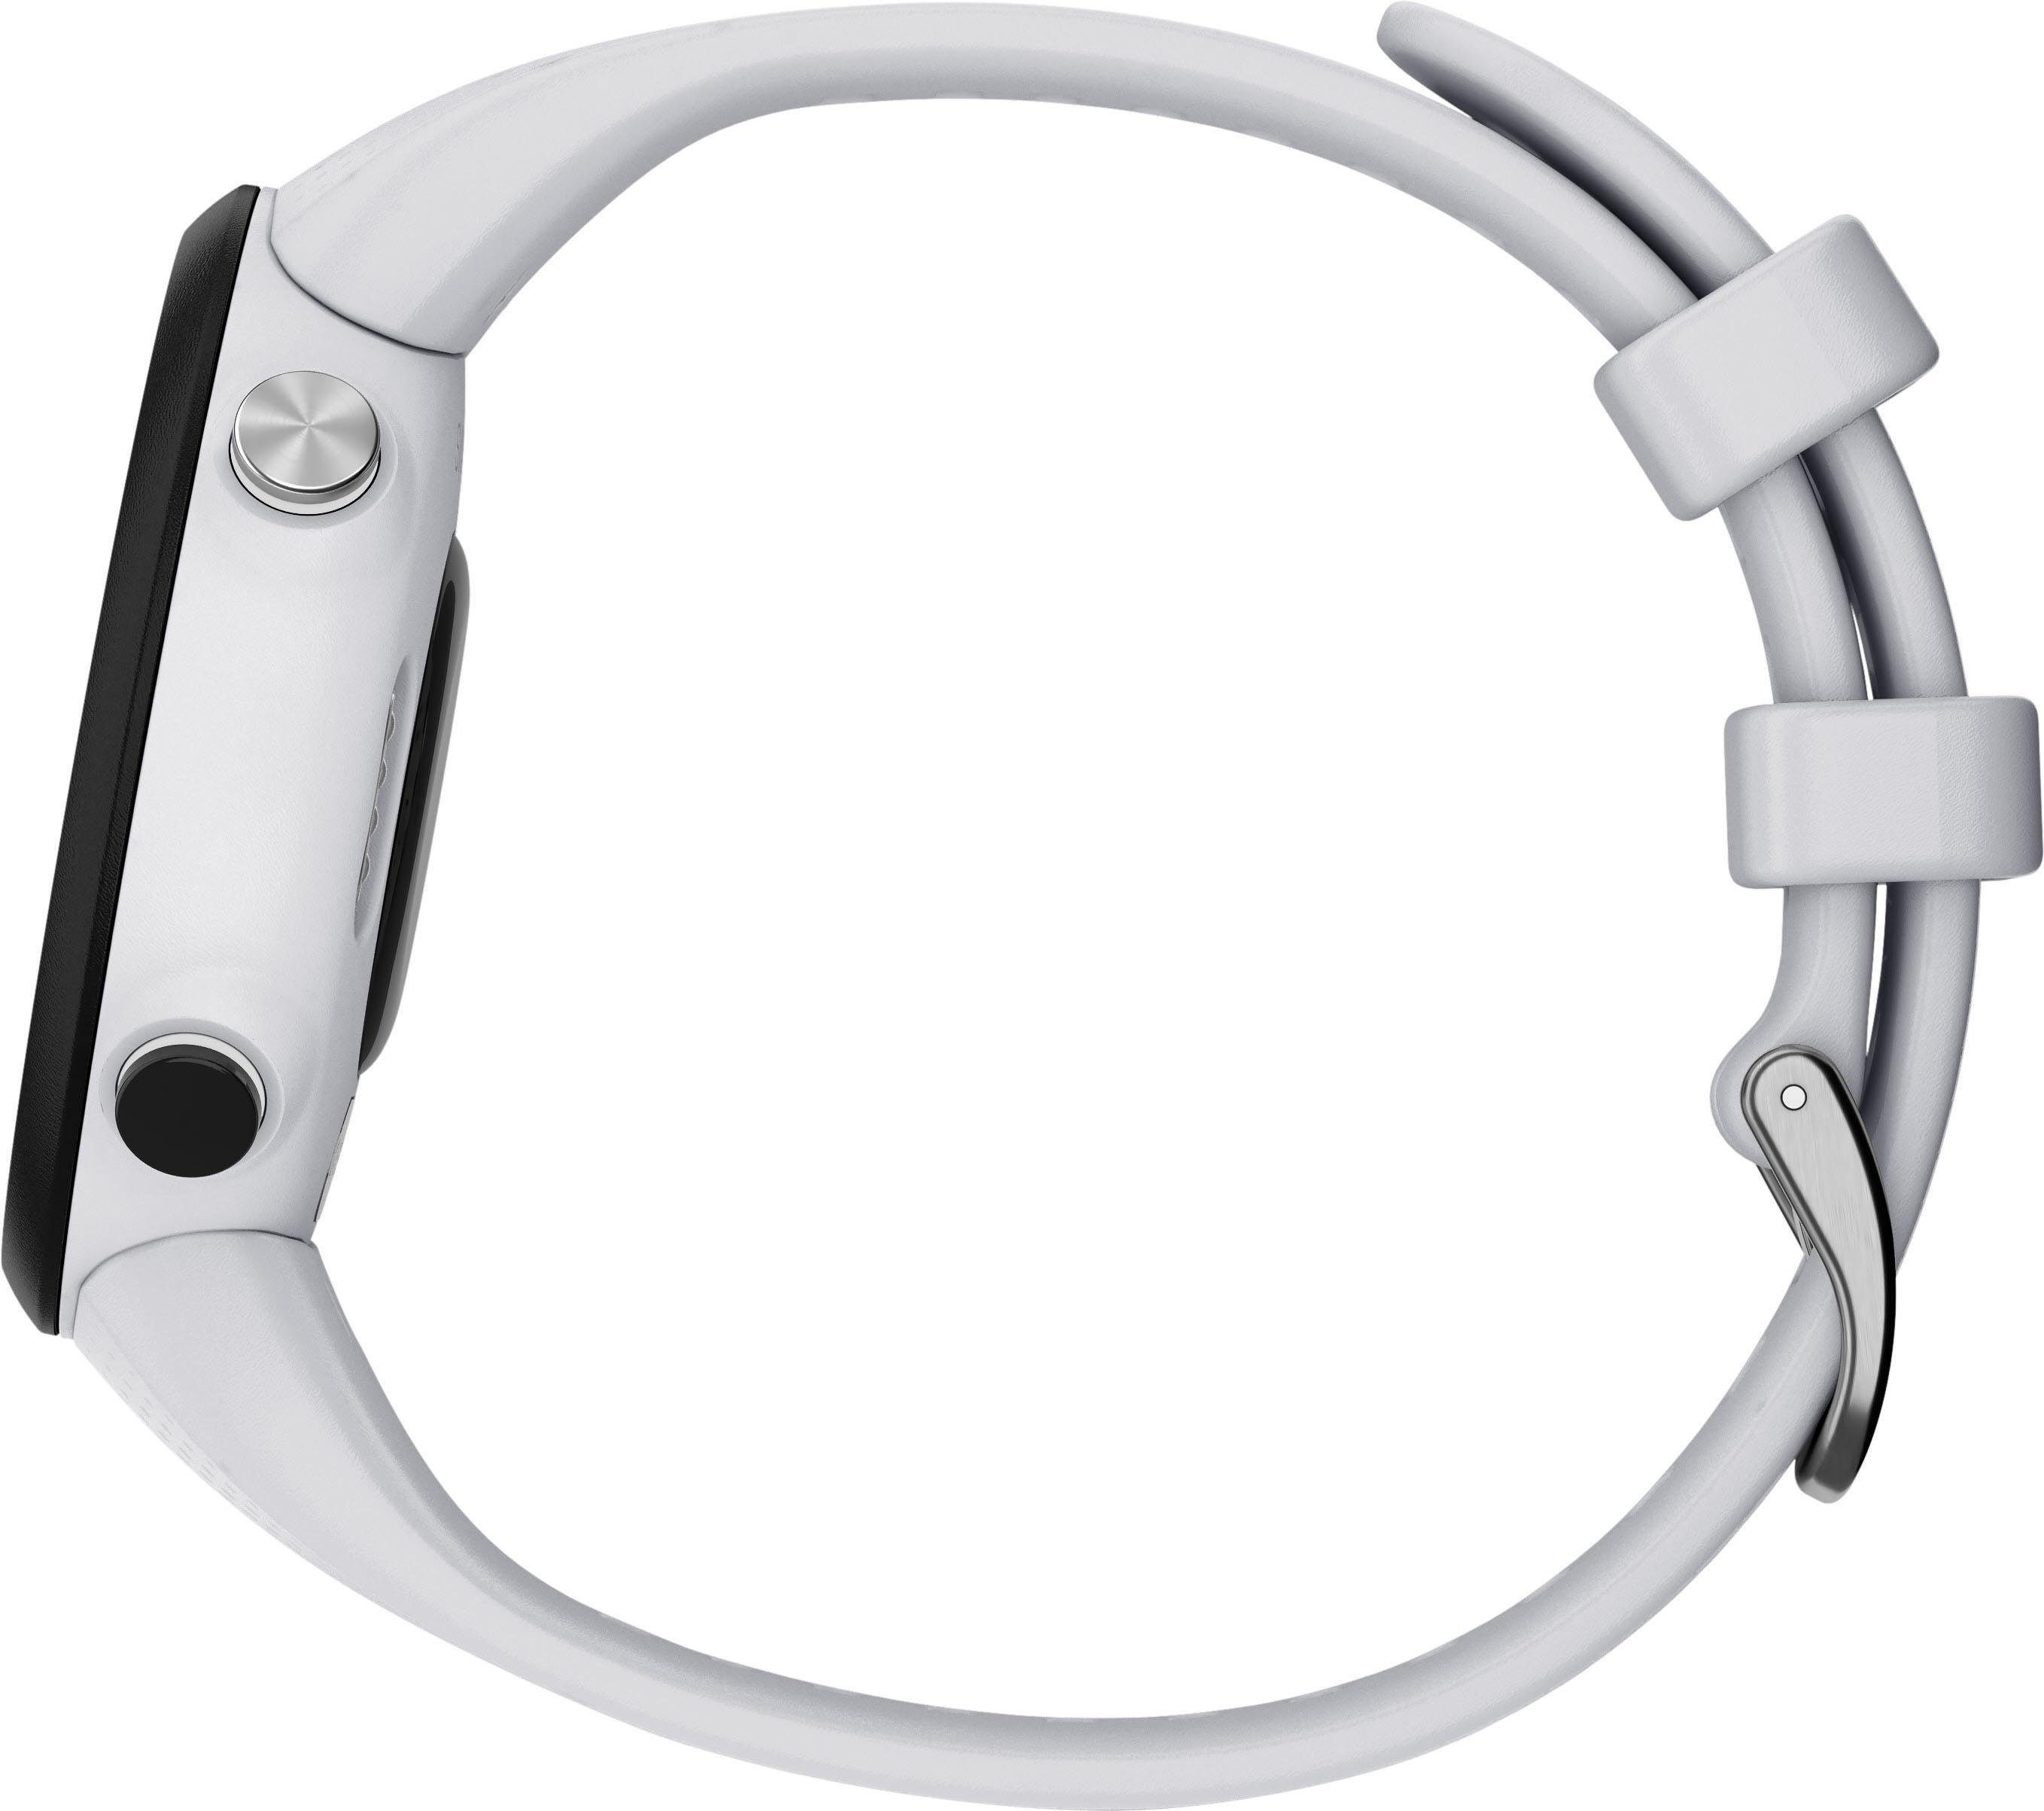 mit Zoll) Smartwatch 20 mm cm/1,04 (2,63 Swim2 Garmin weiß Silikon-Armband